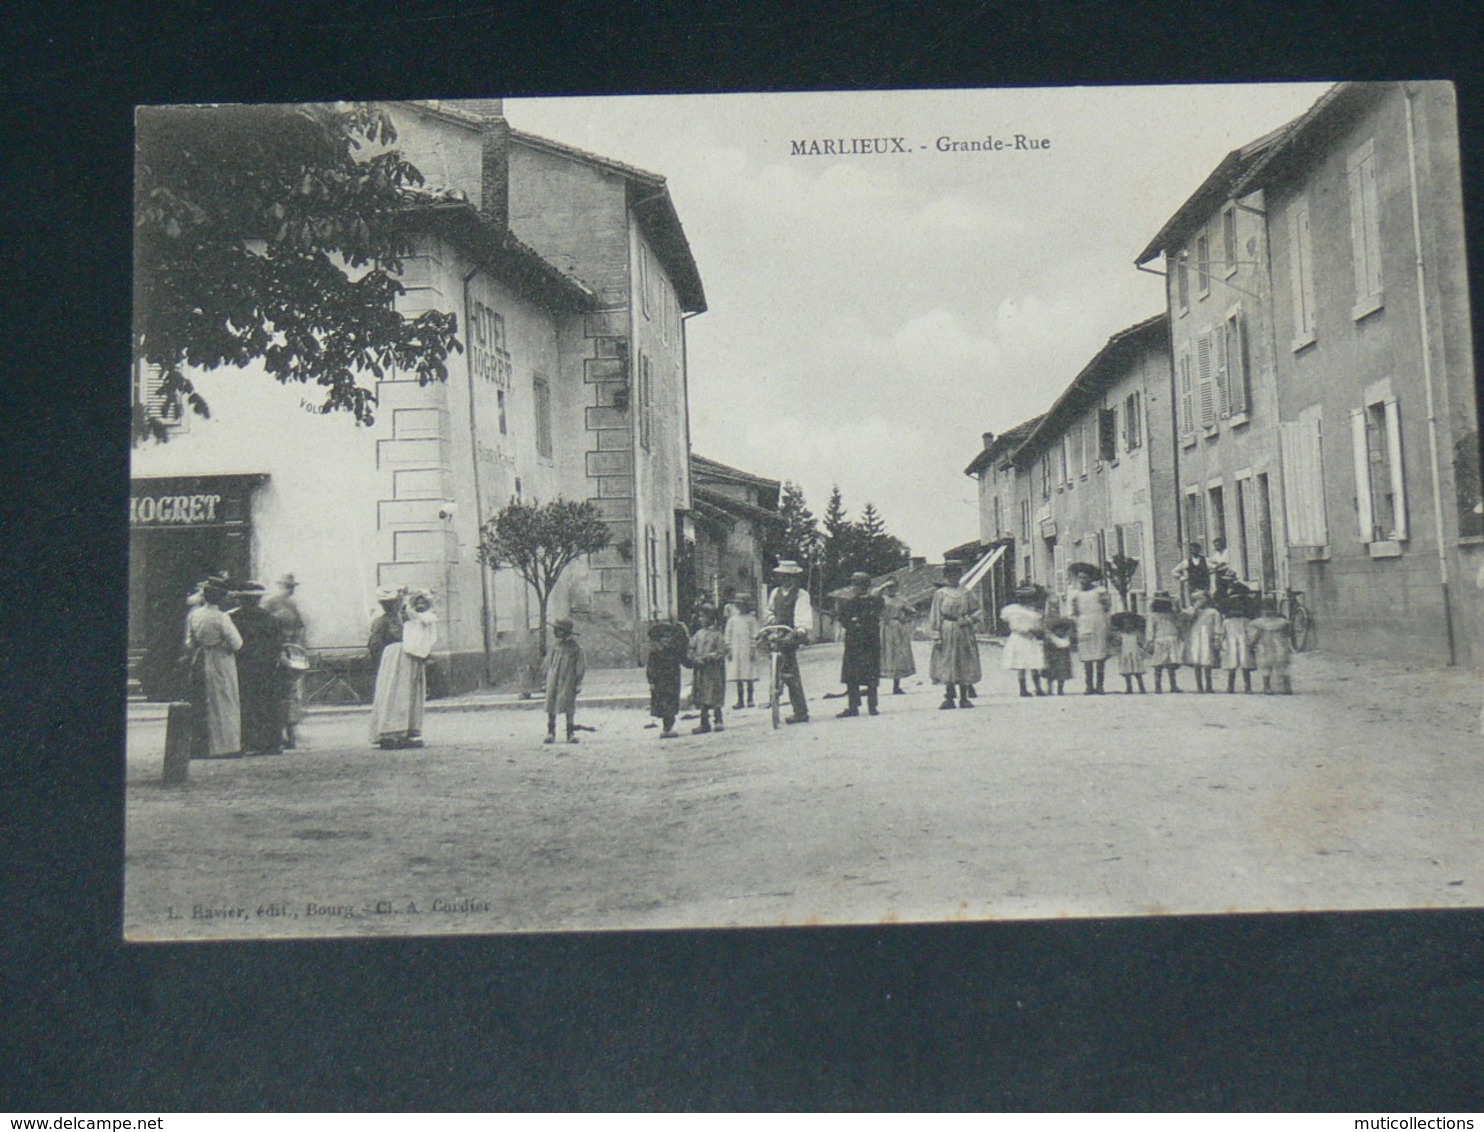 MARLIEUX  / ARDT Bourg-en-Bresse    1910  /   RUE   ....  EDITEUR - Non Classés